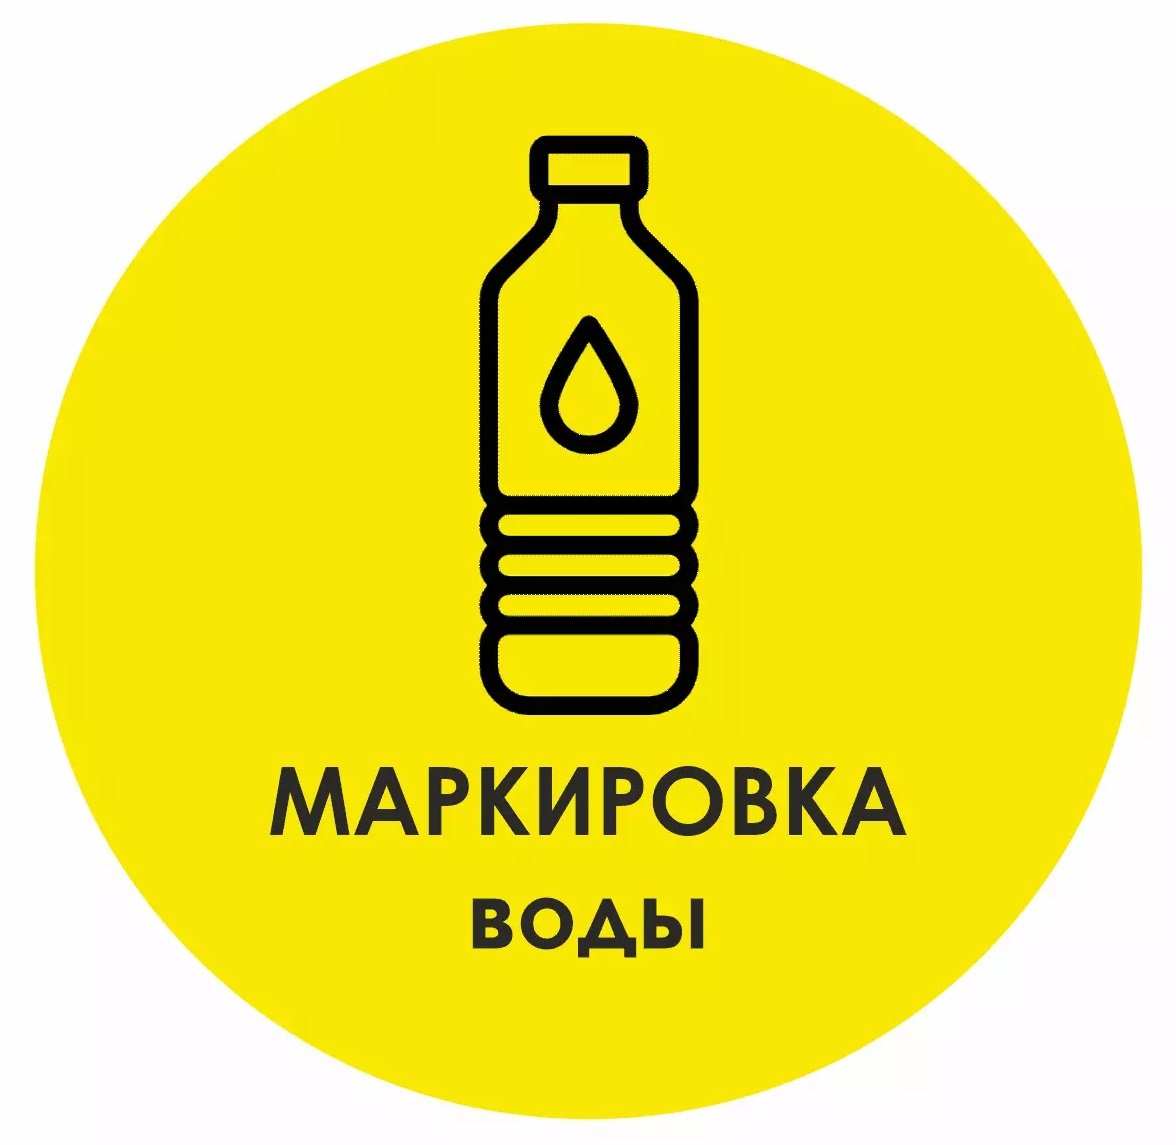 Предварительная программа мероприятия по вопросу маркировки упакованной воды